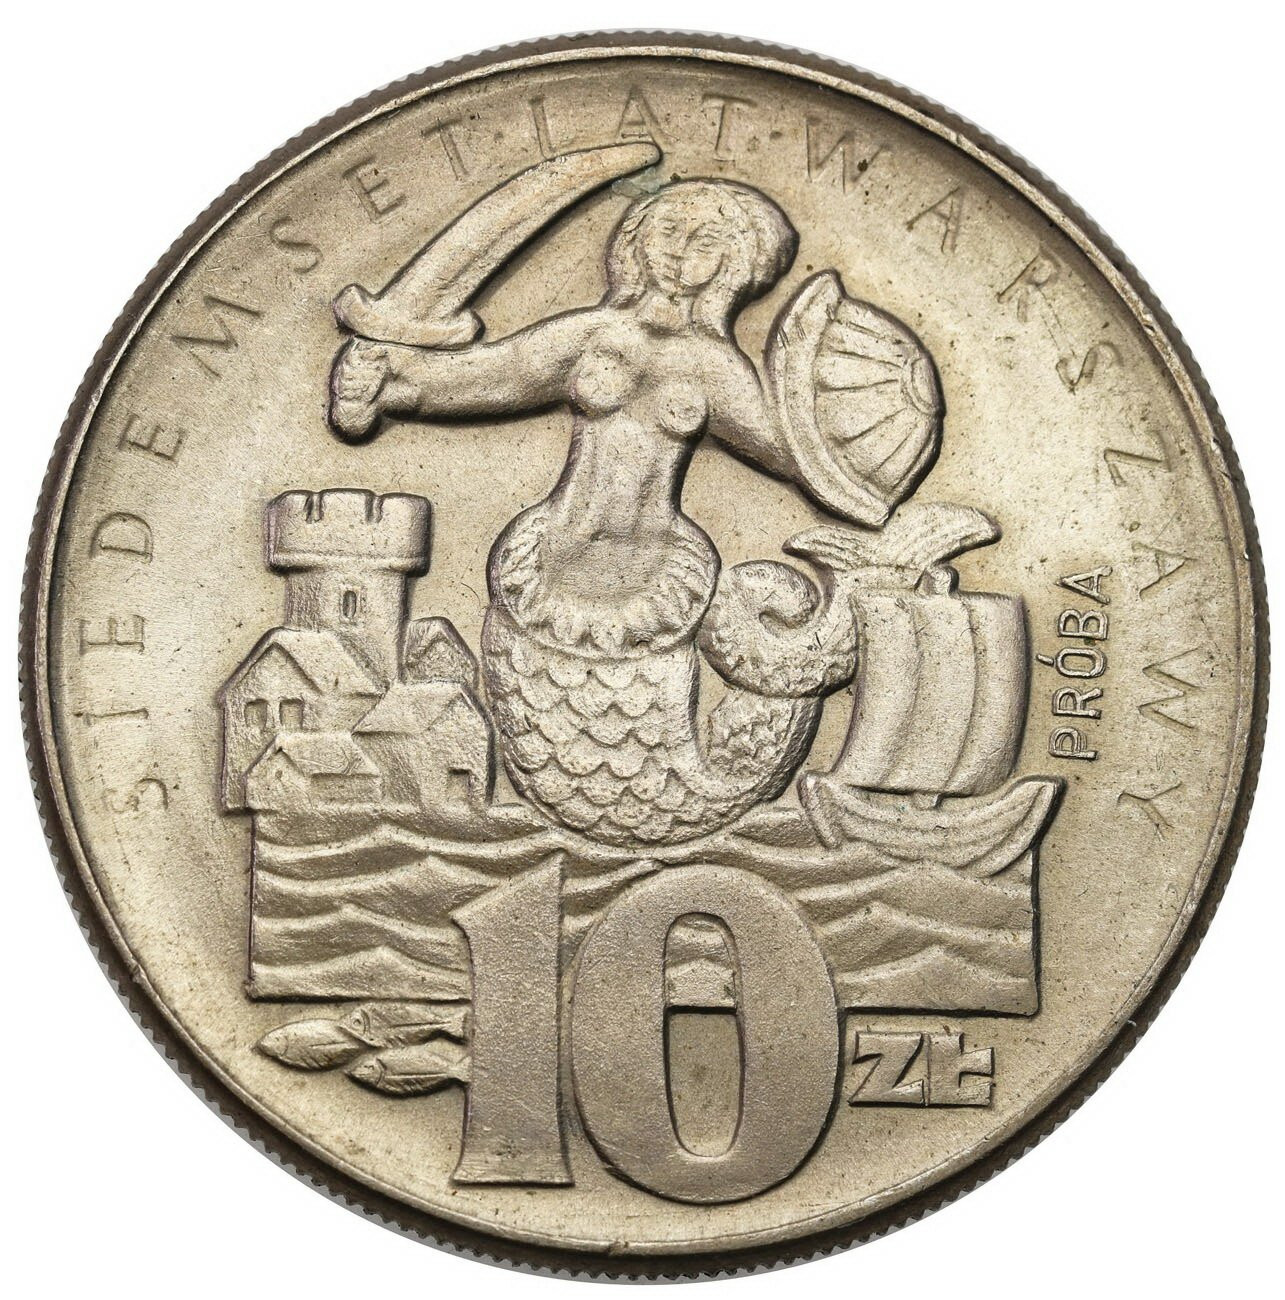 PRÓBA miedzionikiel, 10 złotych 1965 syrenka